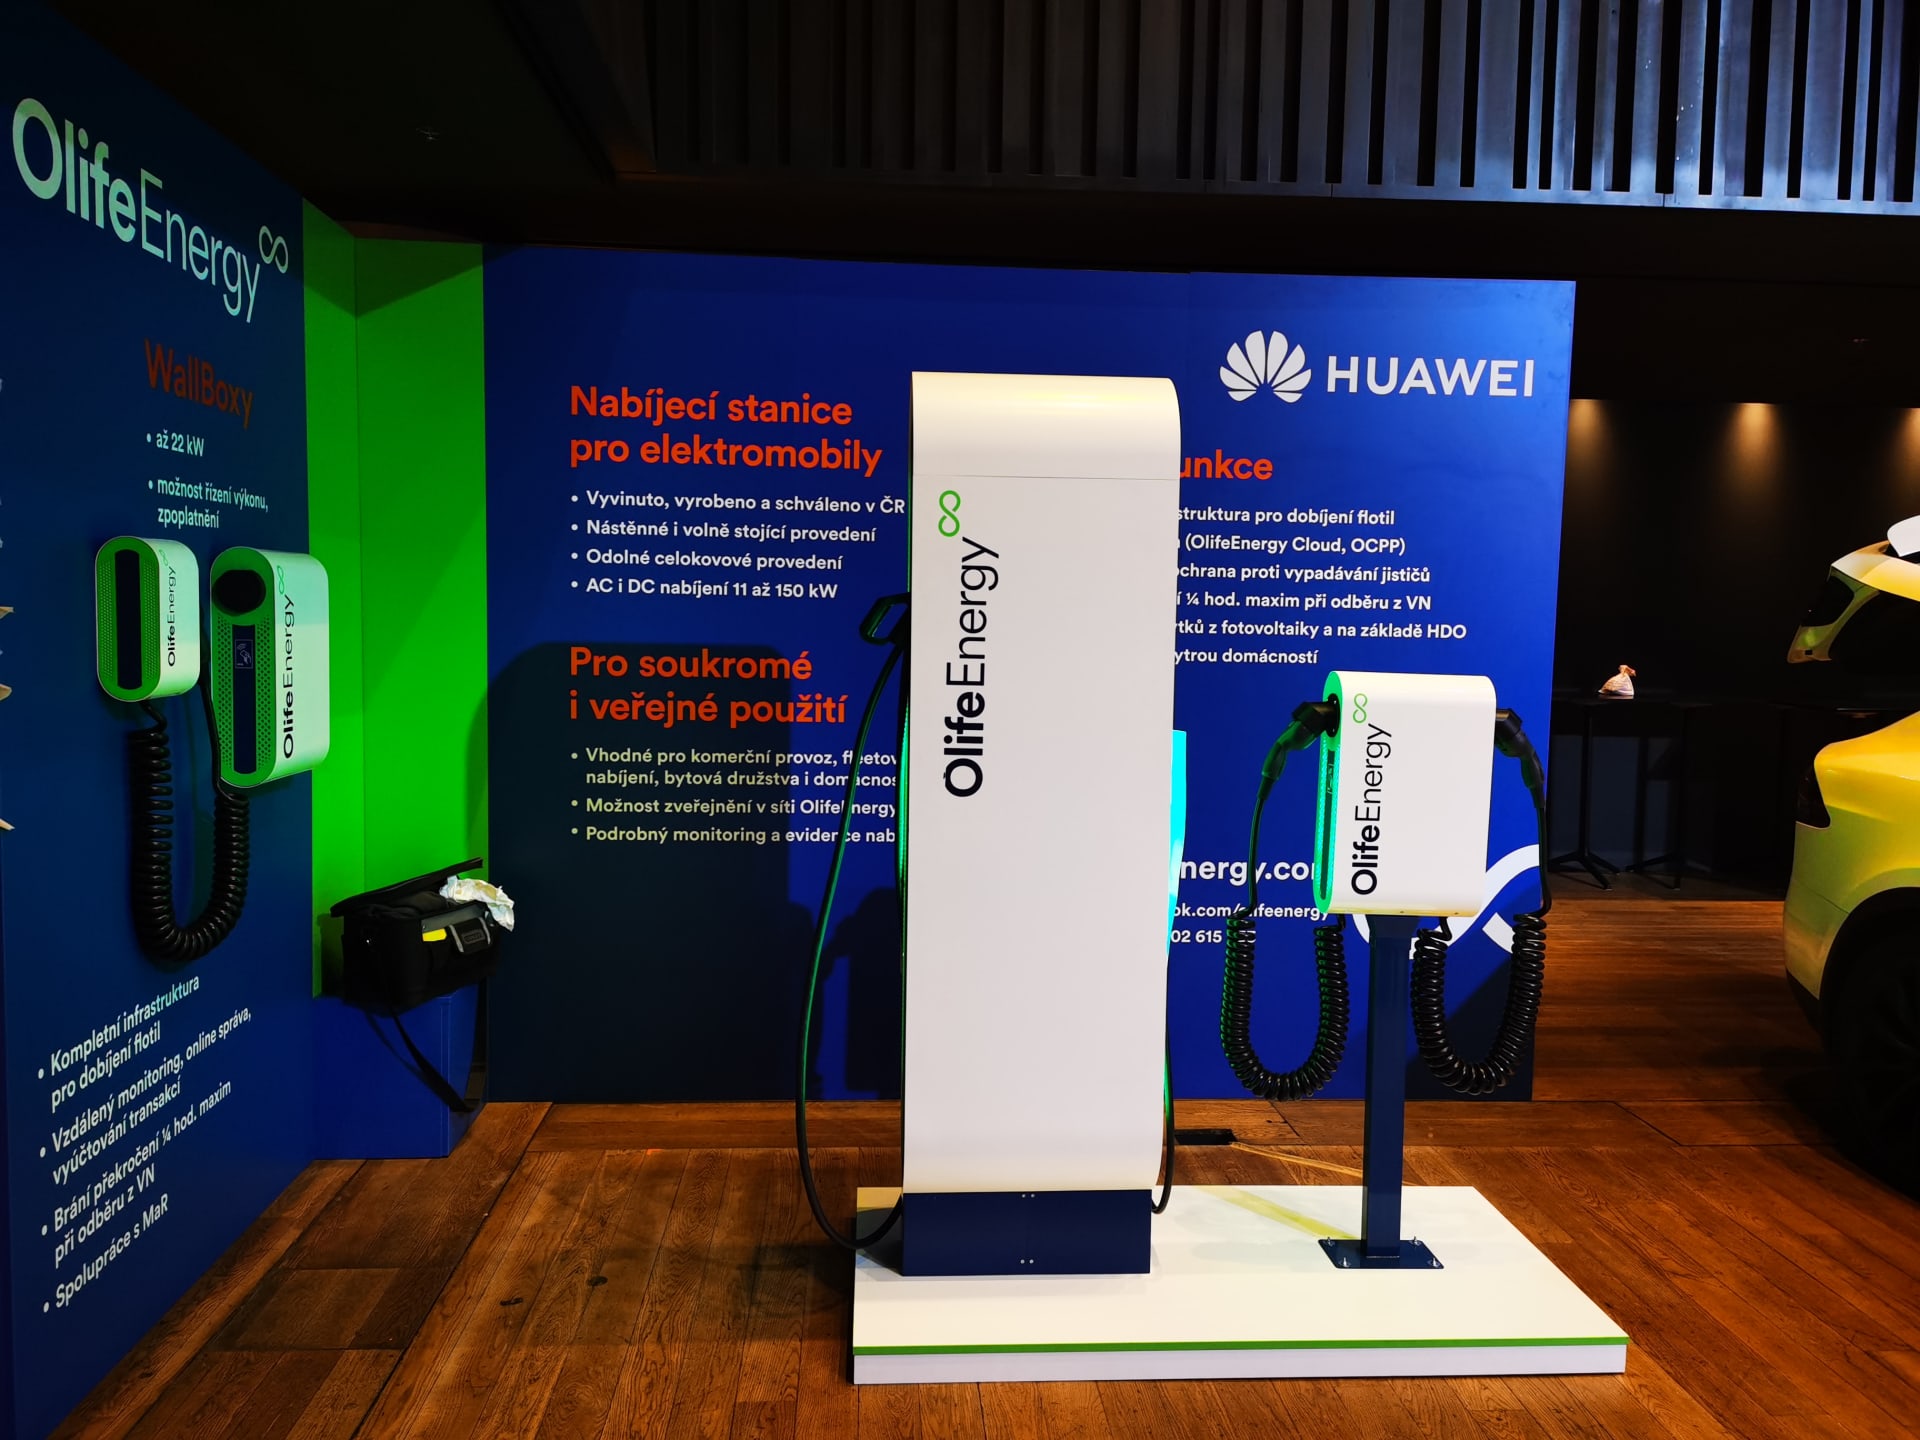 Huawei - OlifeEnergy